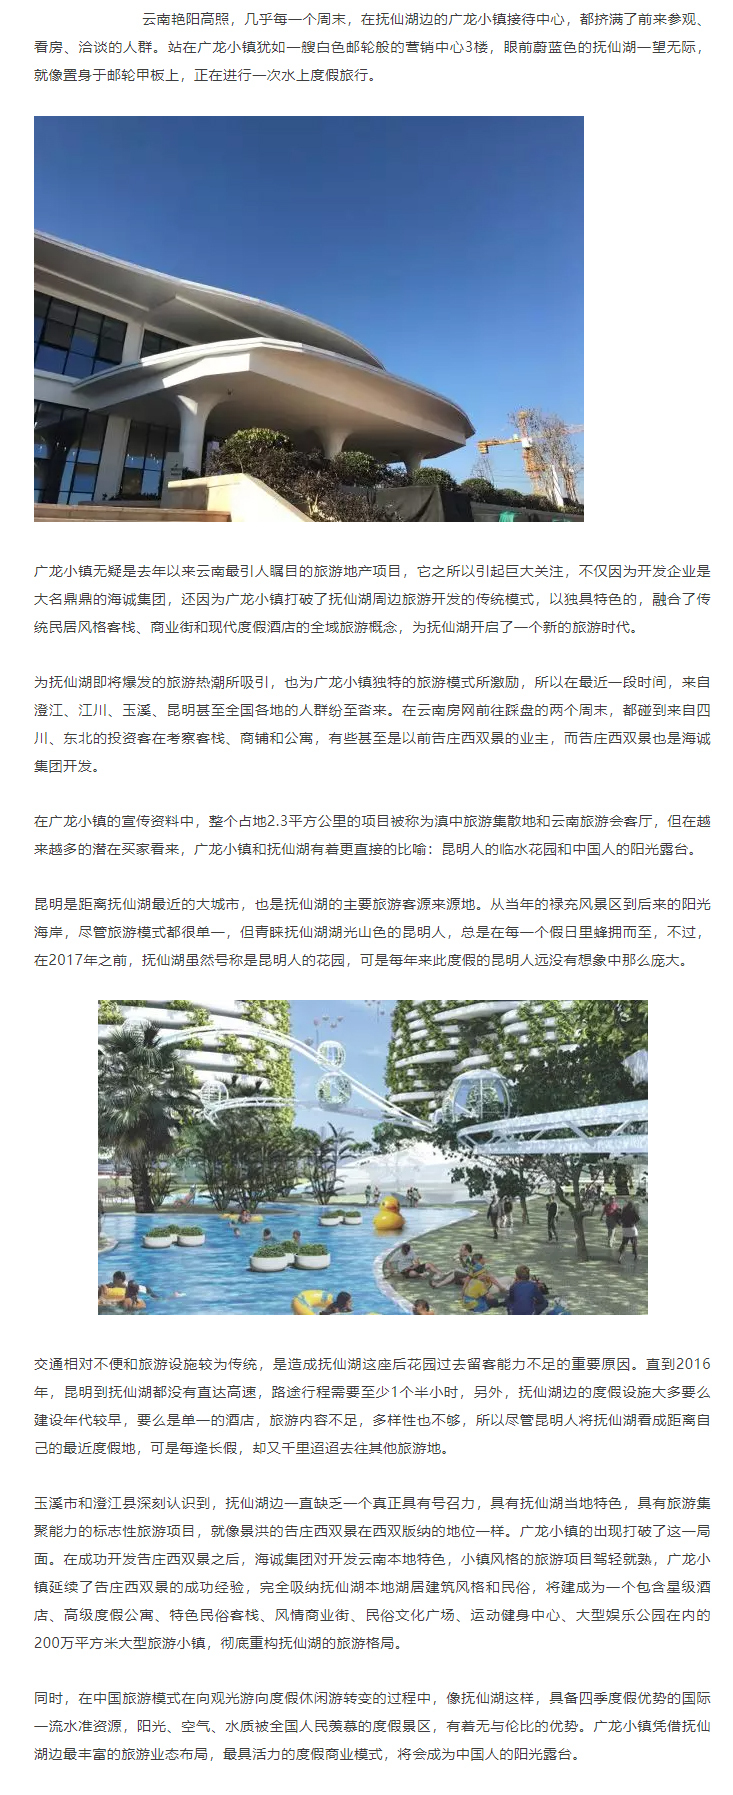 广龙小镇:昆明人的临水花园和中国人的阳光露台